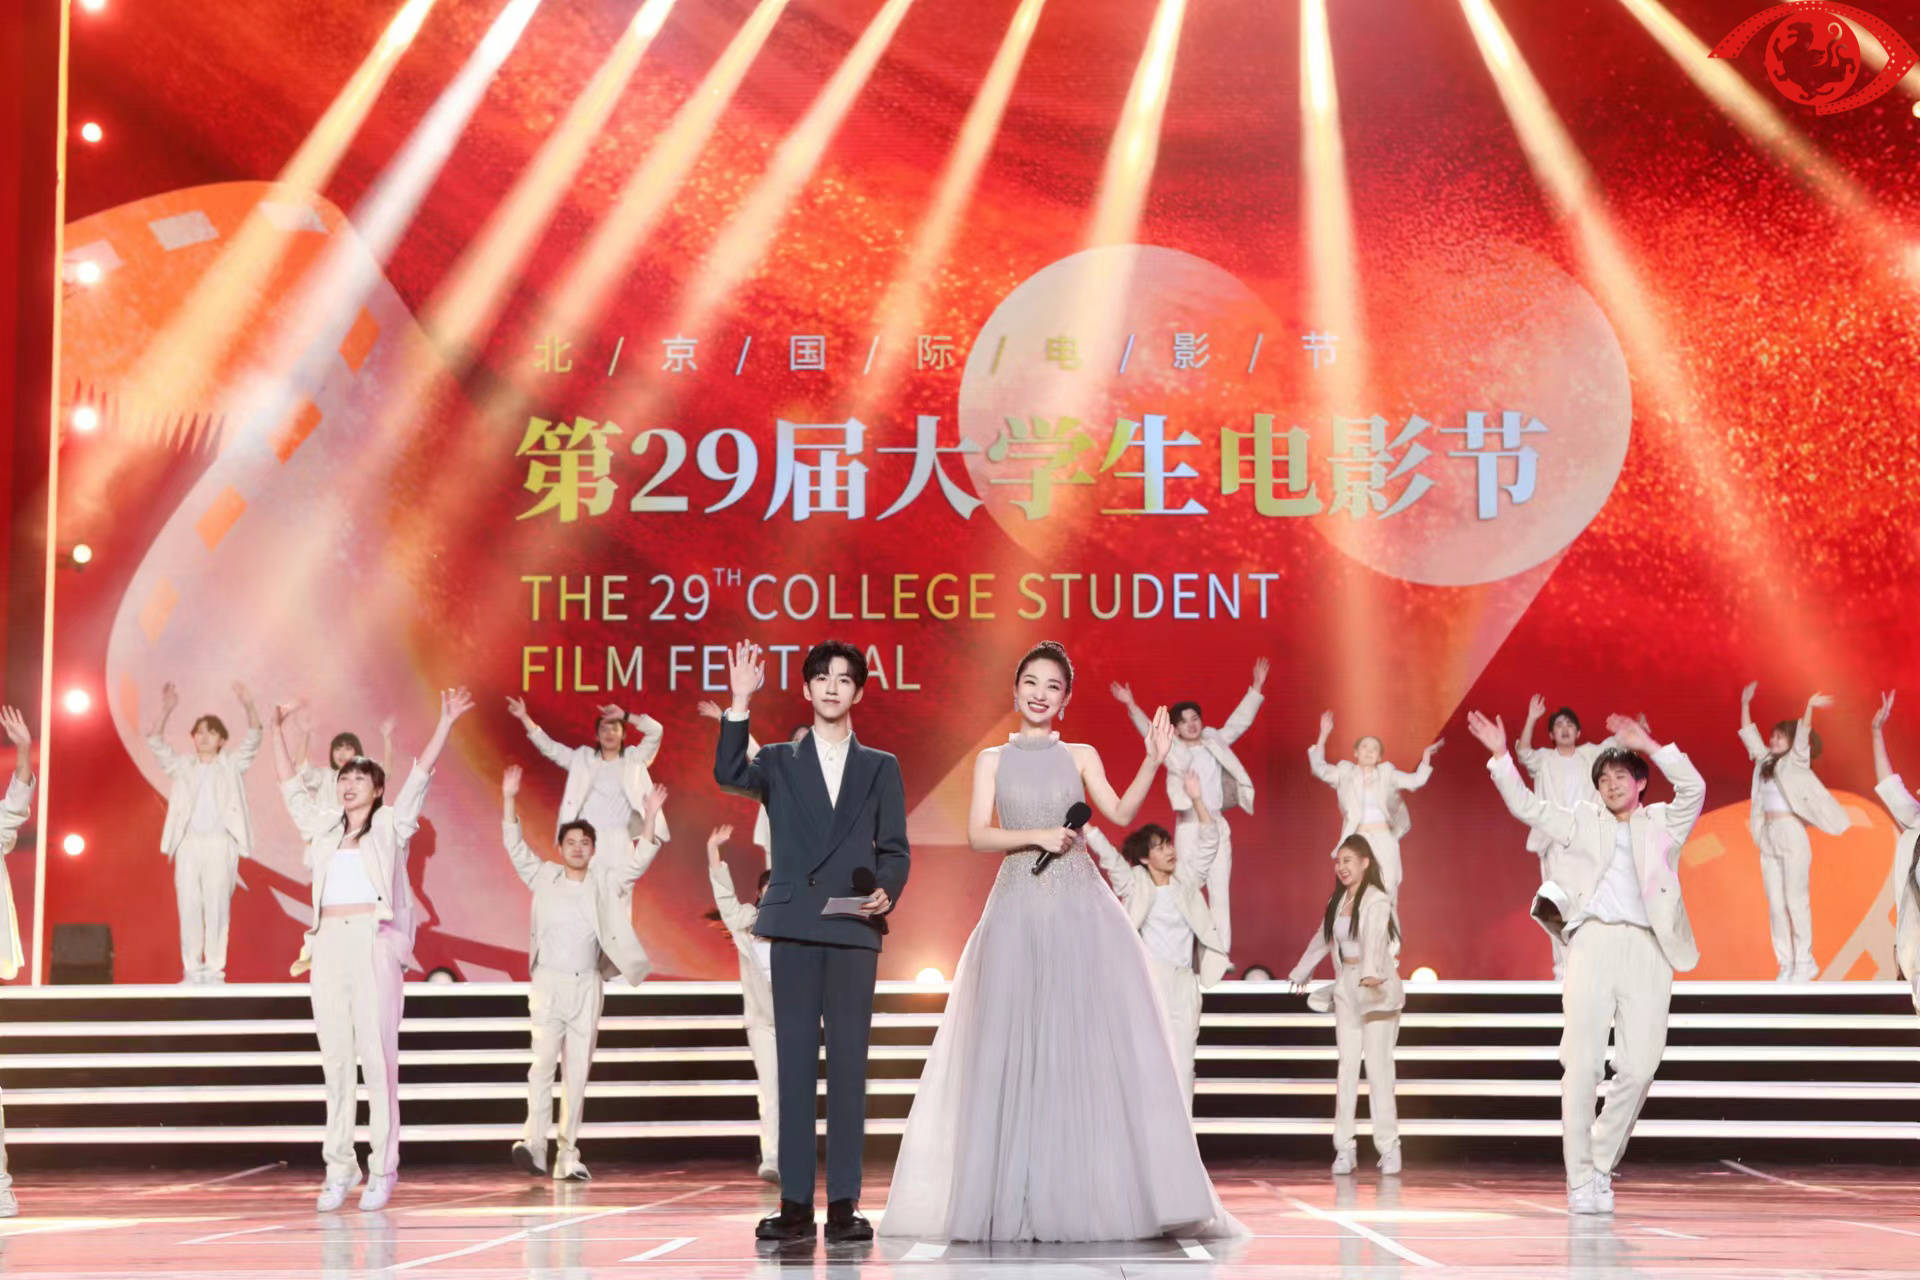 《邓小平小道》获最受大学生欢迎年度影片荣誉 文牧野徐克获年度导演荣誉